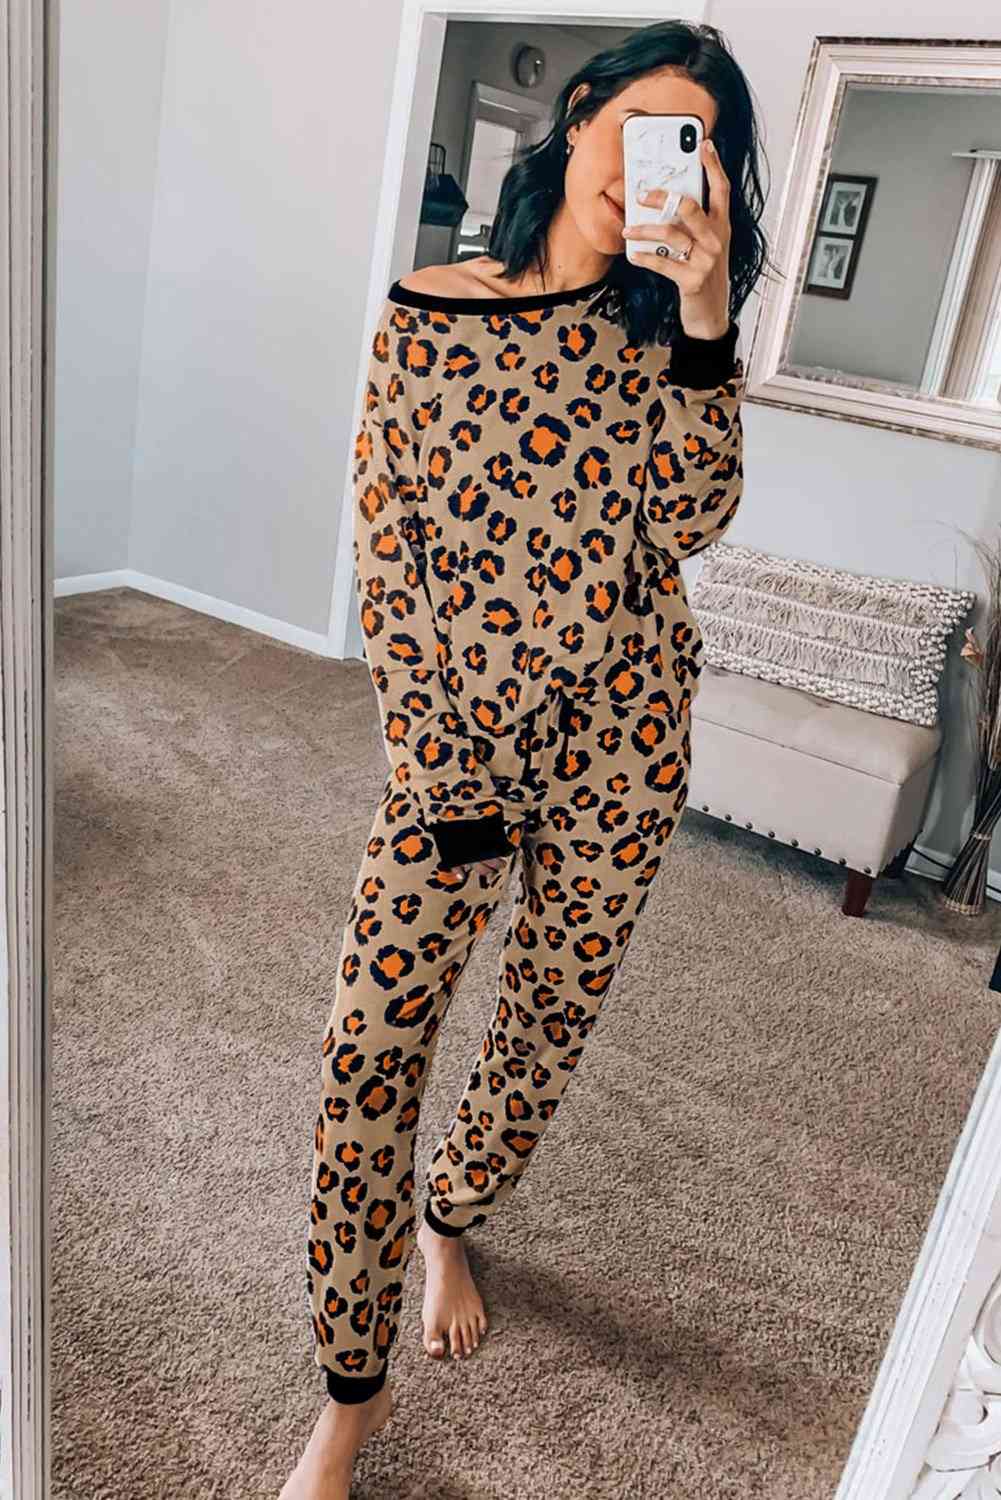 Brown Leopard Print, Long Sleeve Top, Pants - Loungewear Set